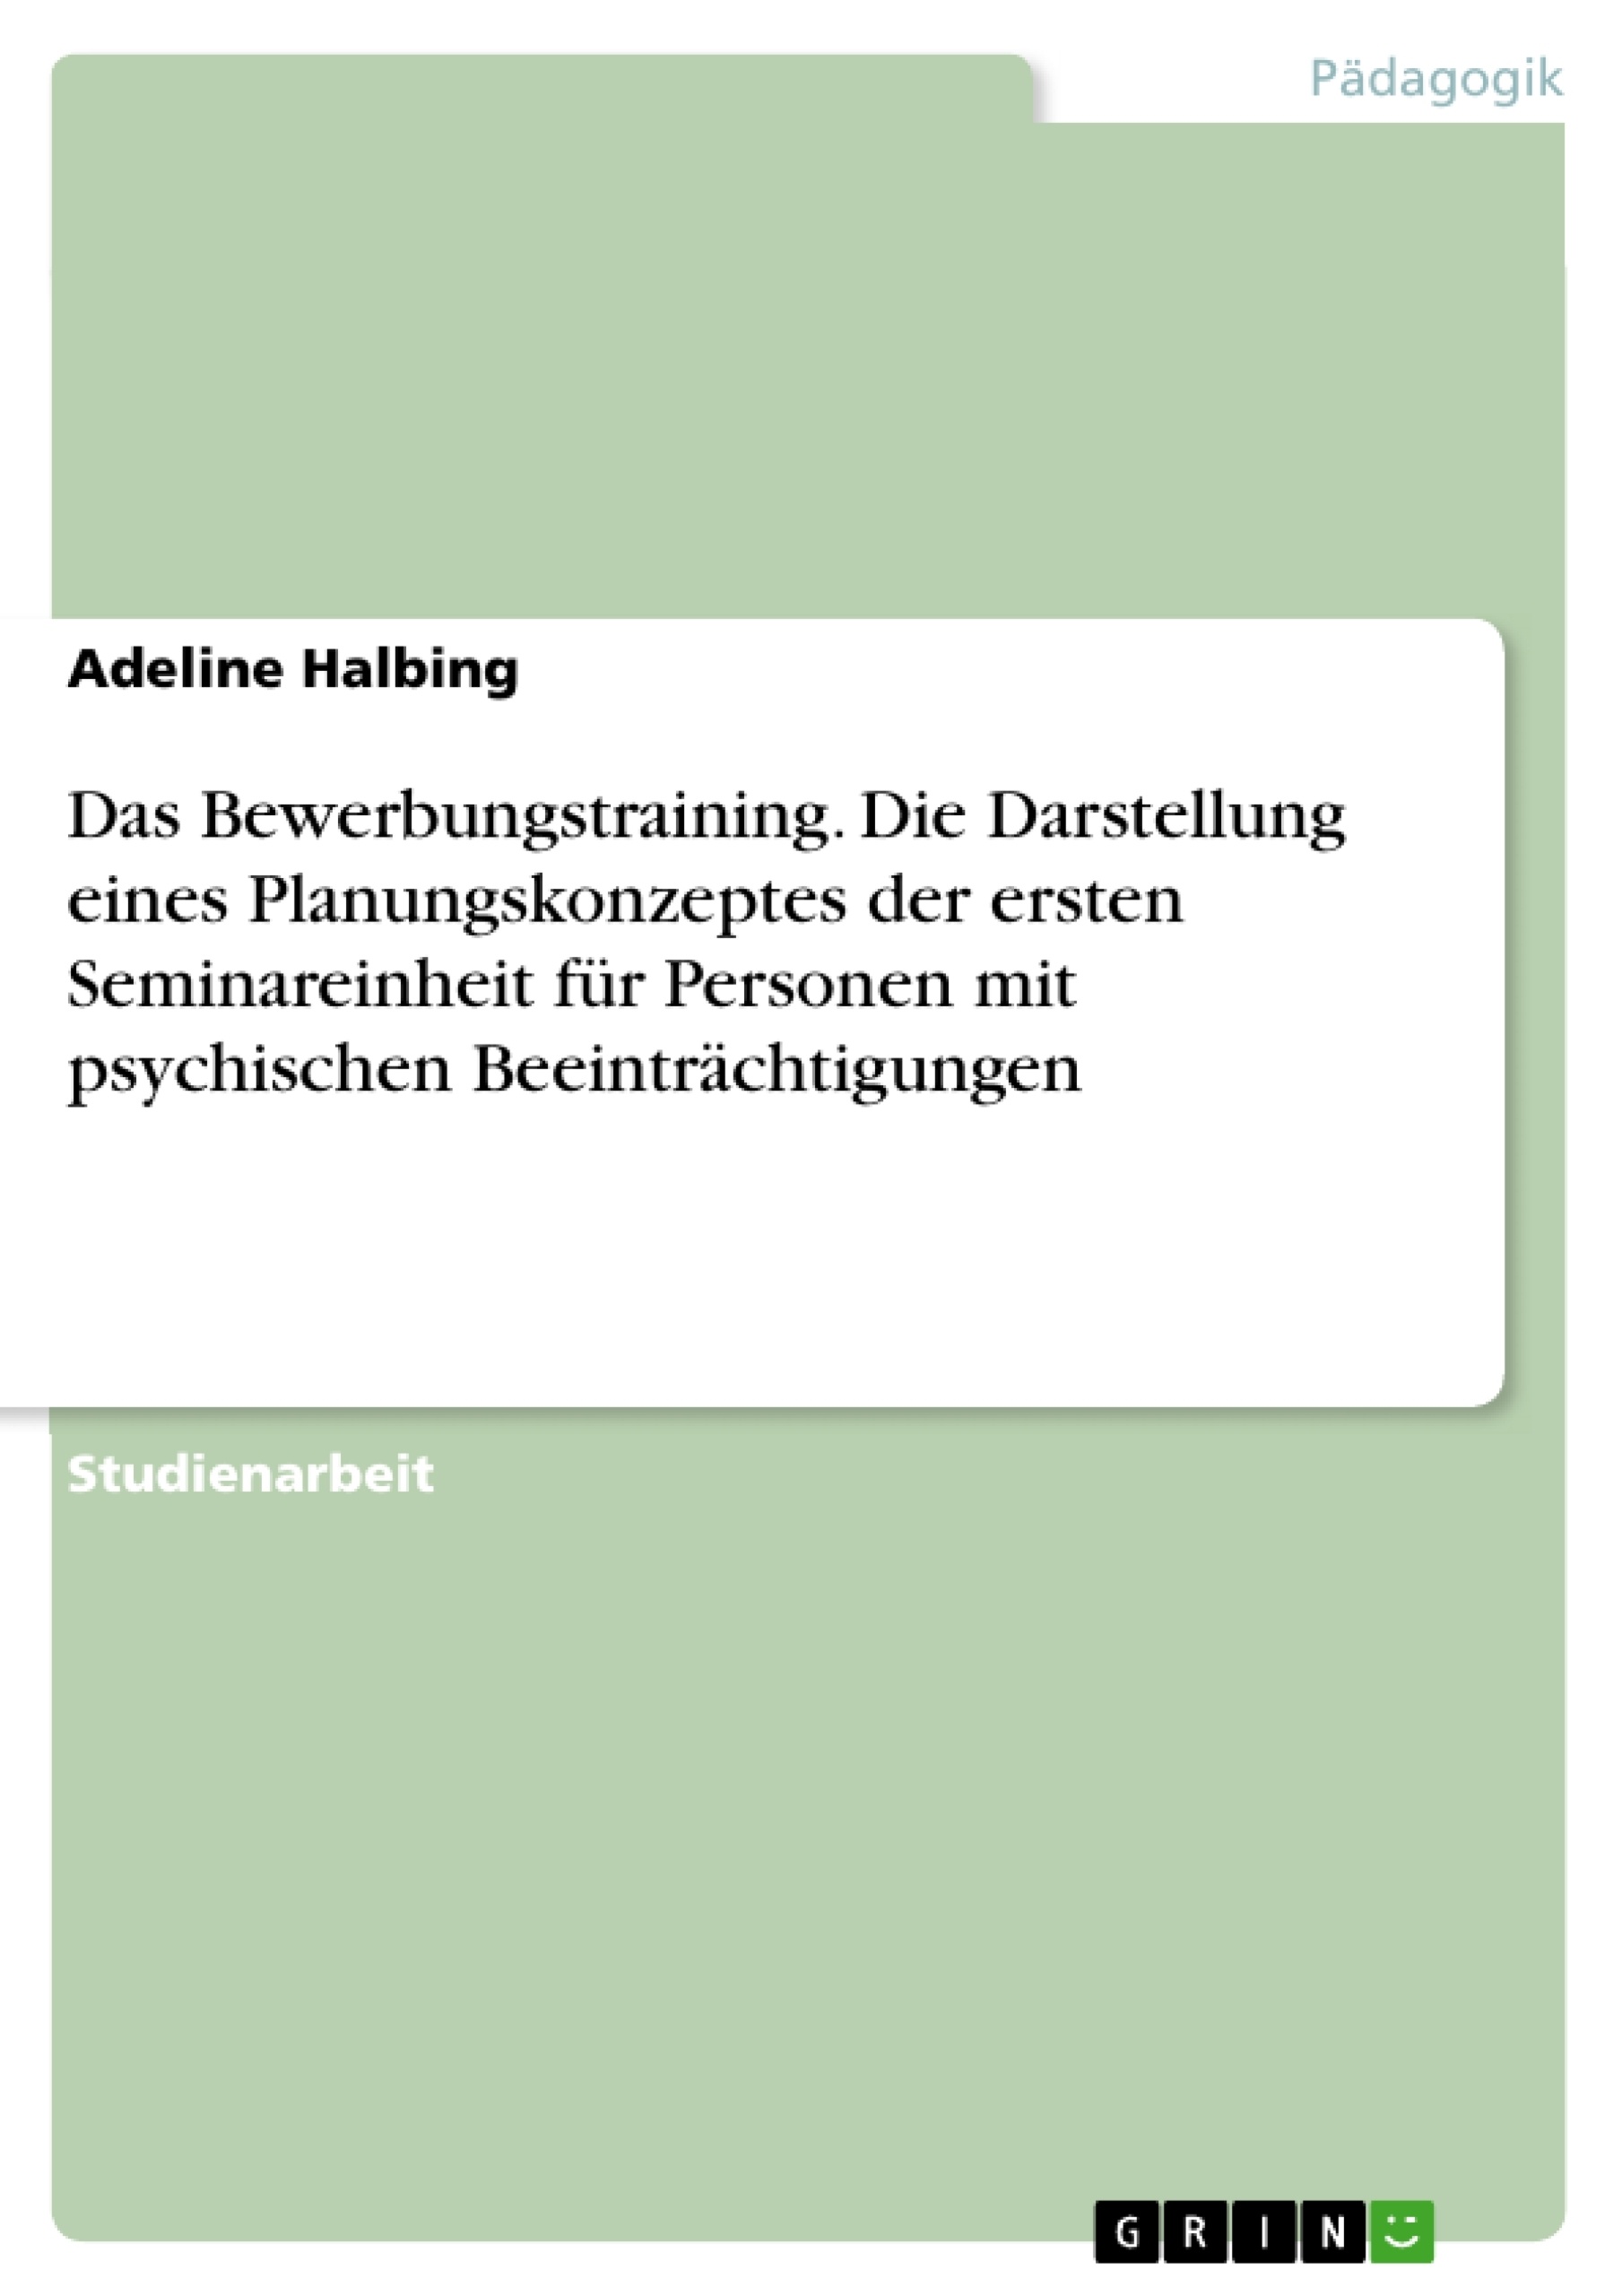 Title: Das Bewerbungstraining. Die Darstellung eines Planungskonzeptes der ersten Seminareinheit für Personen mit psychischen Beeinträchtigungen